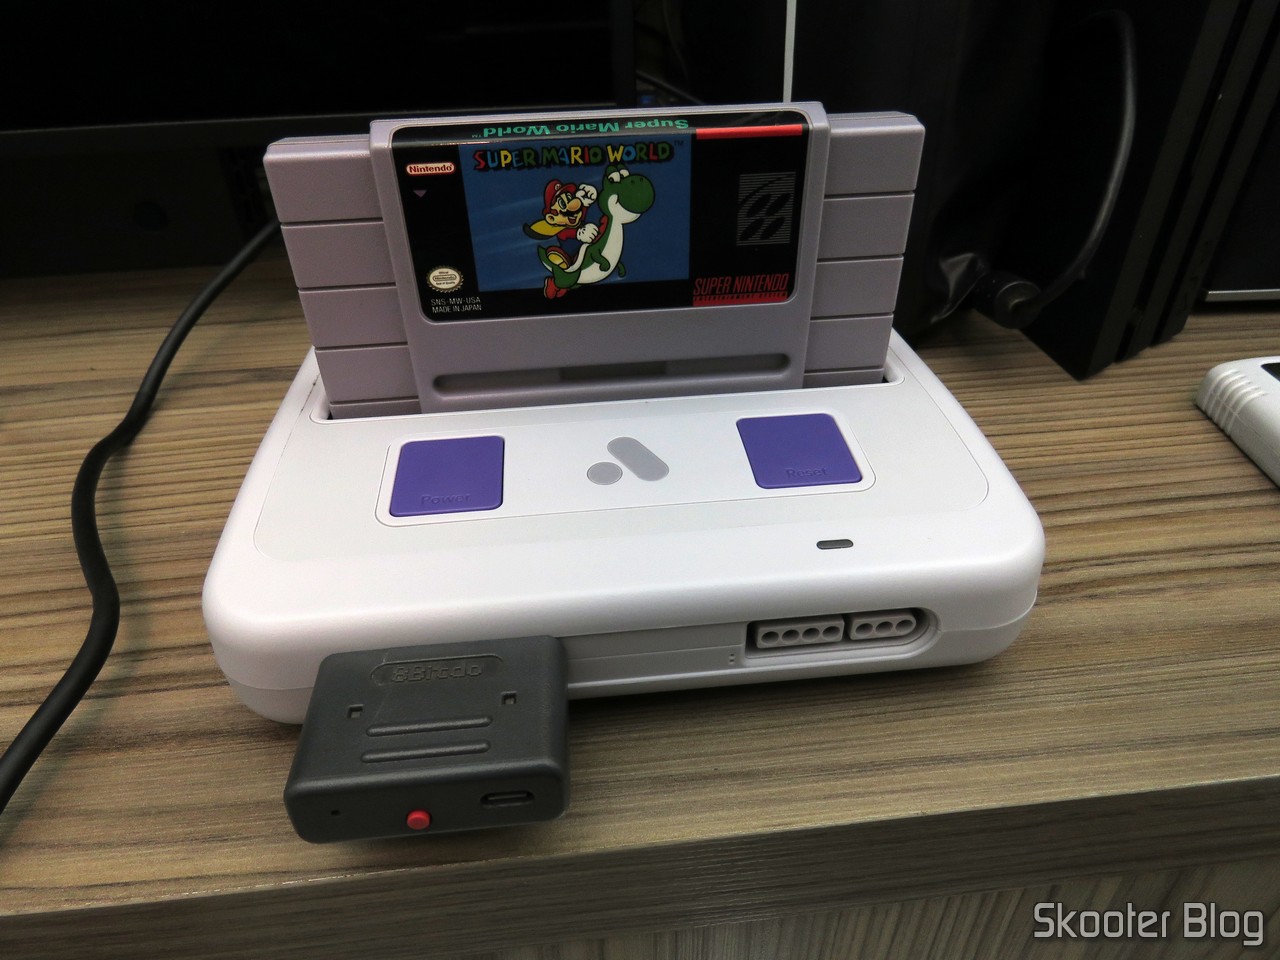 Acessório 'perdido' do Game Boy Color permitiria acesso à internet